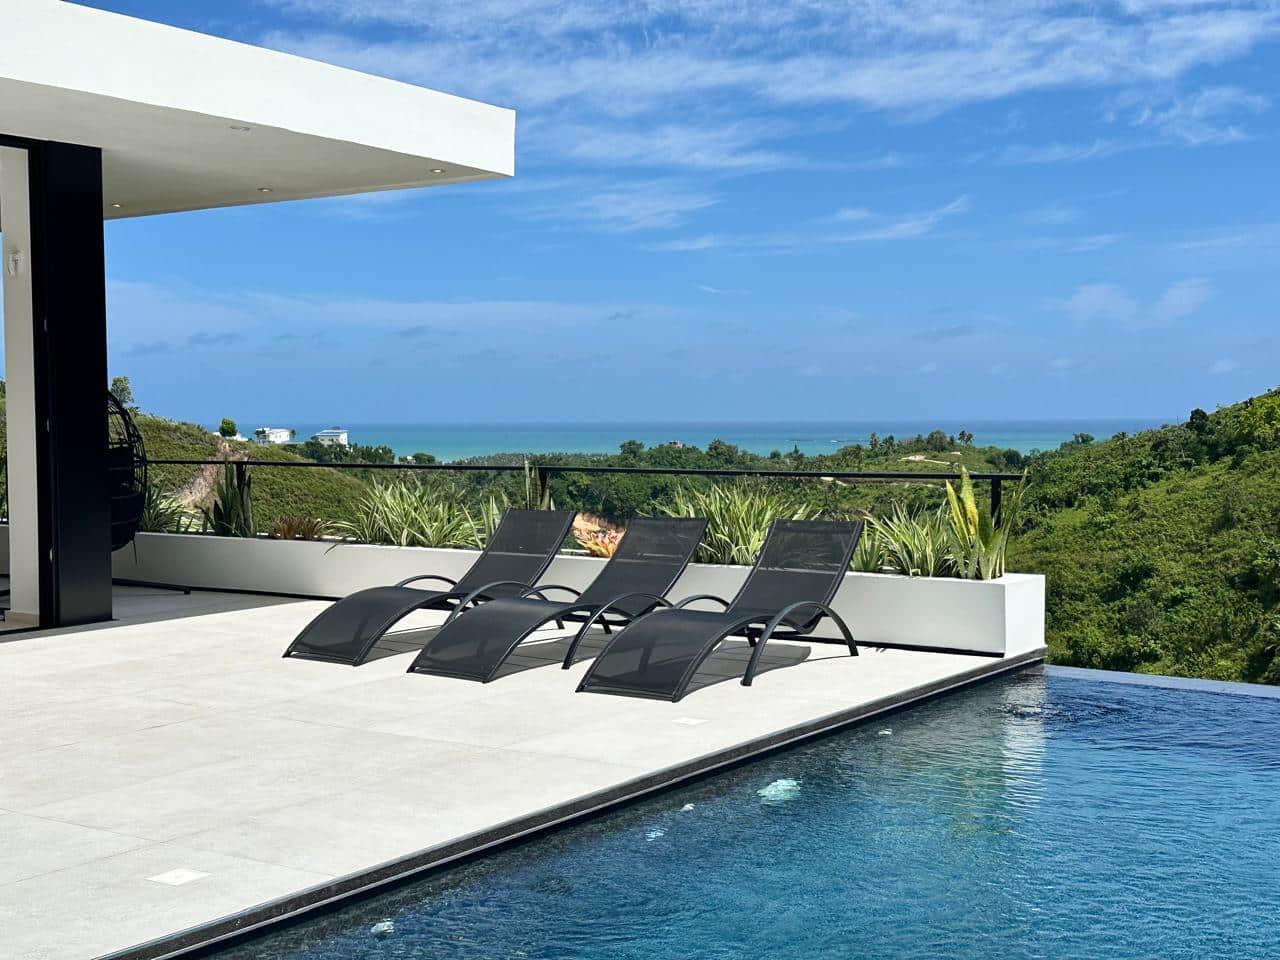 Splendid 4-bedroom villa with ocean vista - Las Terrenas Real Estate - Ocean Edge Dominican Republic (6)